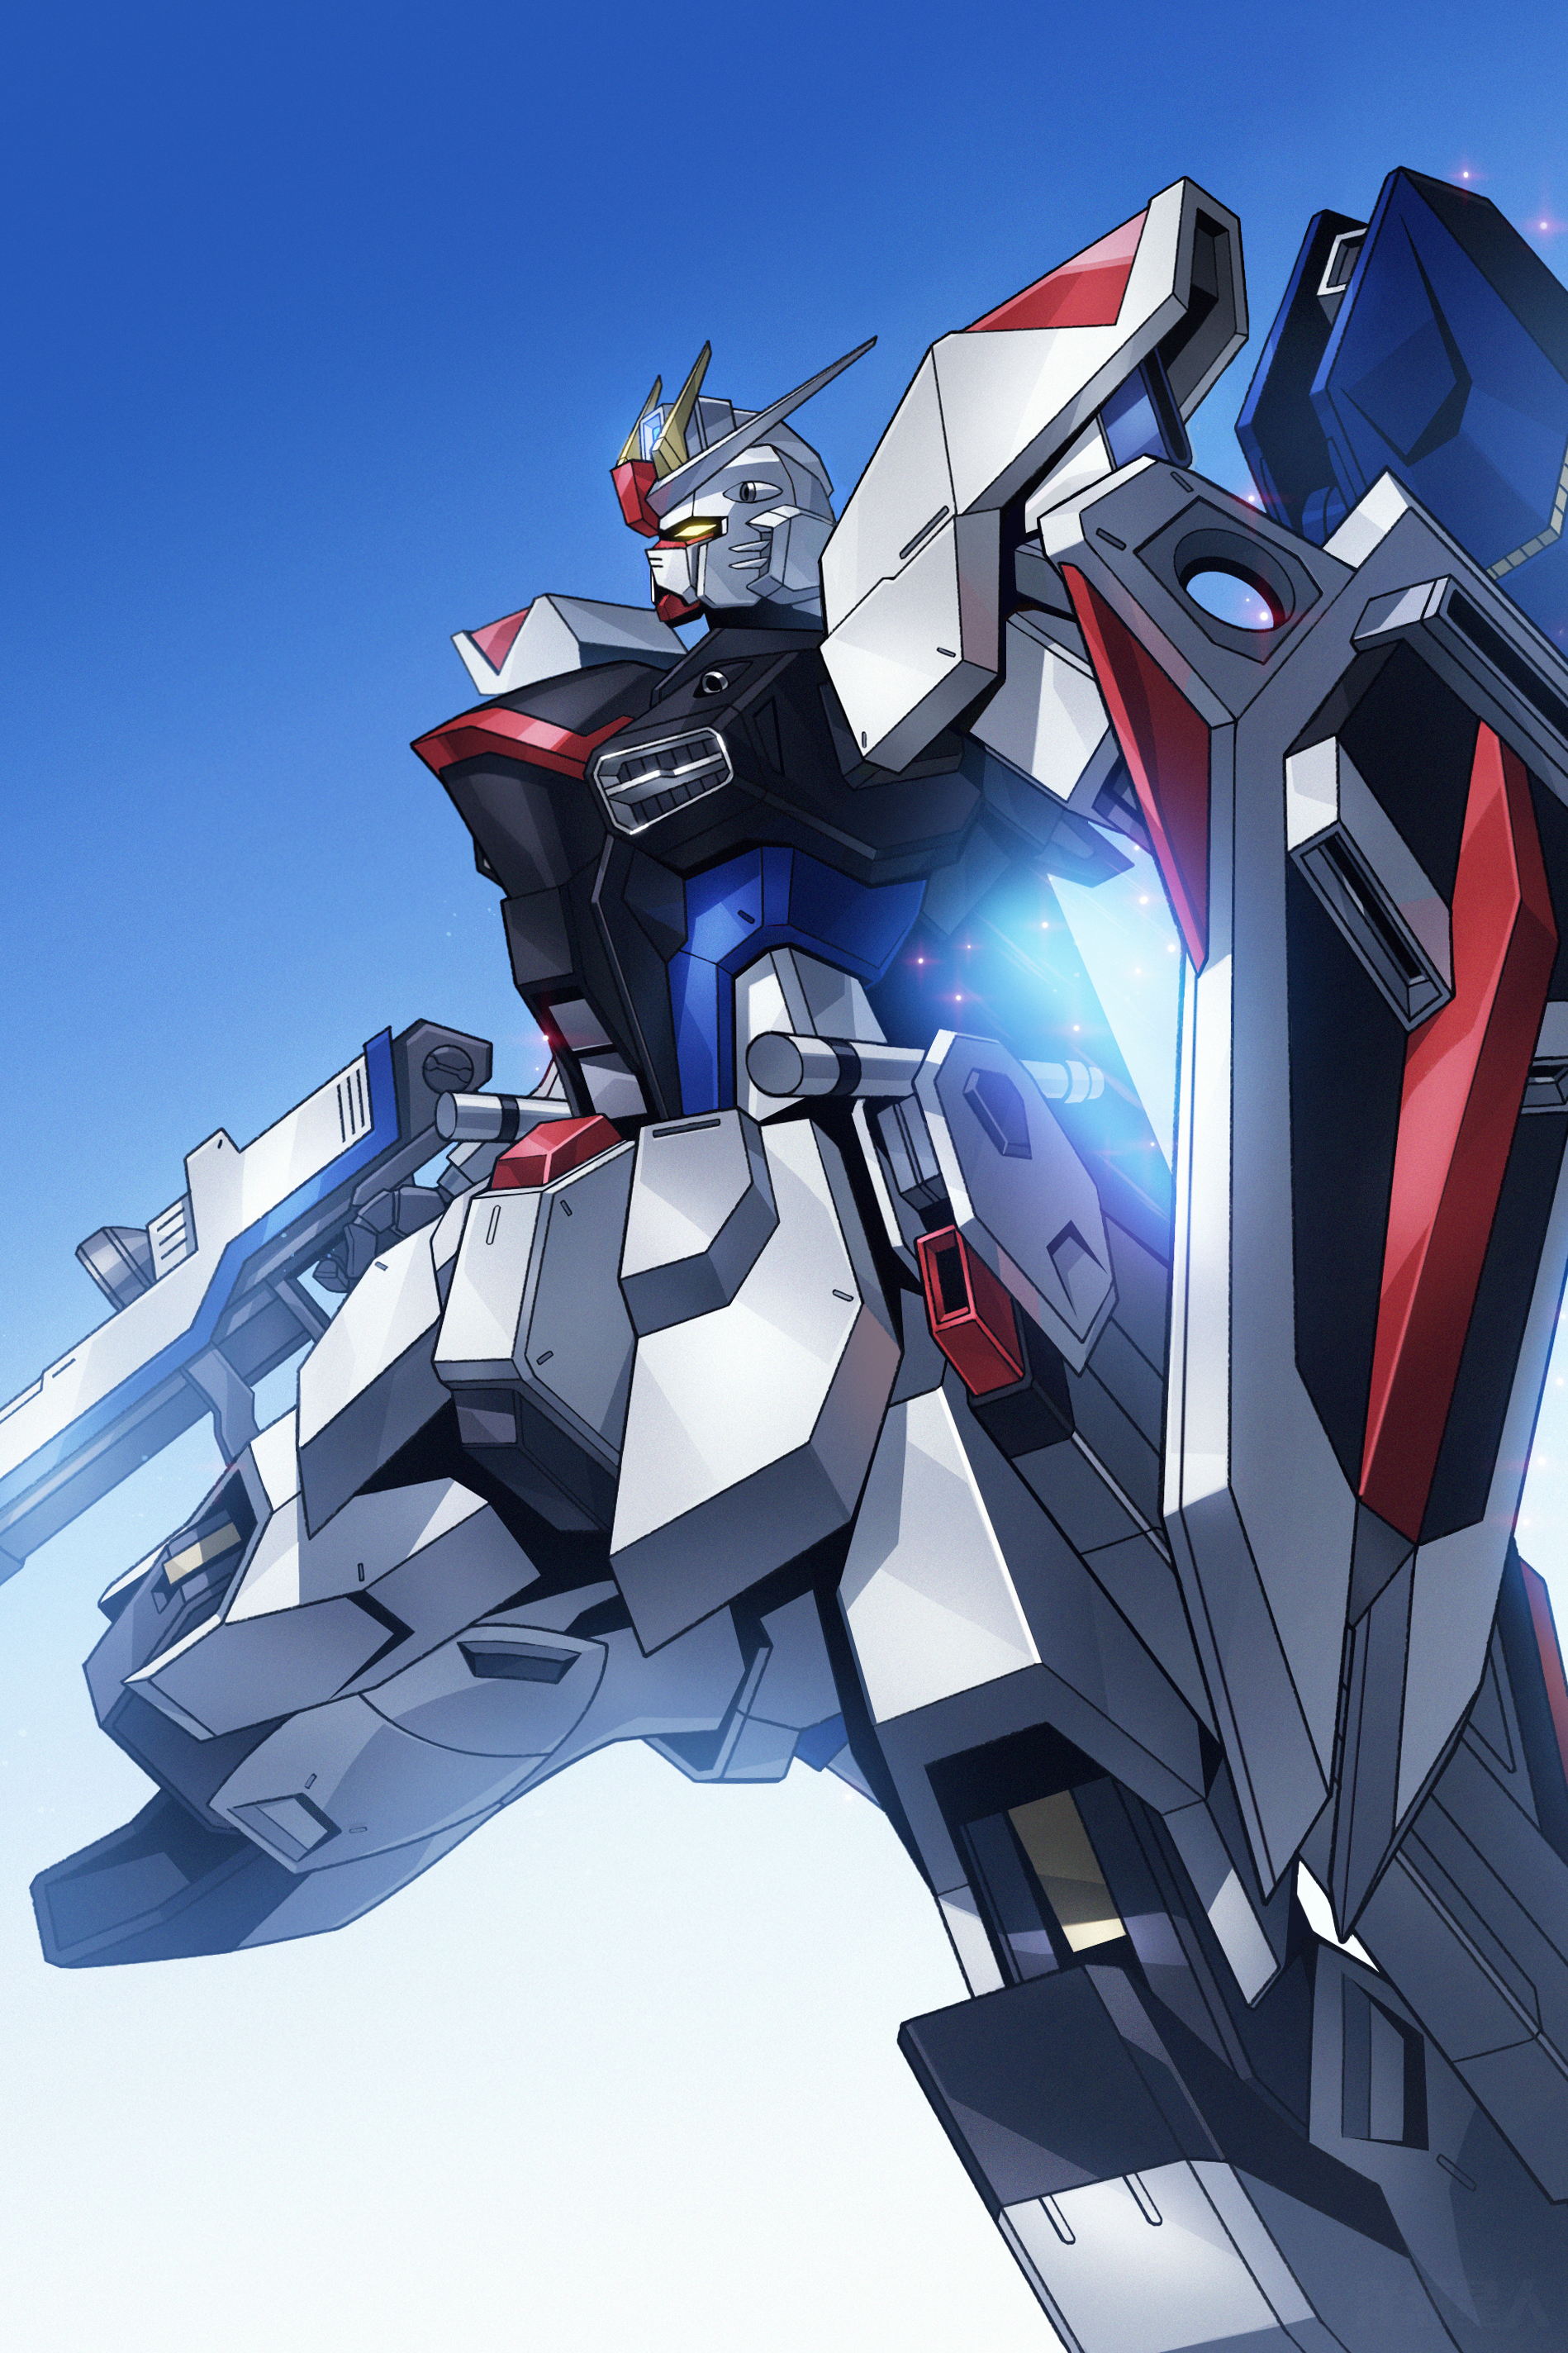 Anime 1898x2848 anime digital art artwork fan art Super Robot Taisen Mobile Suit Gundam SEED Mobile Suit Gundam SEED Destiny Gundam Freedom Gundam mechs